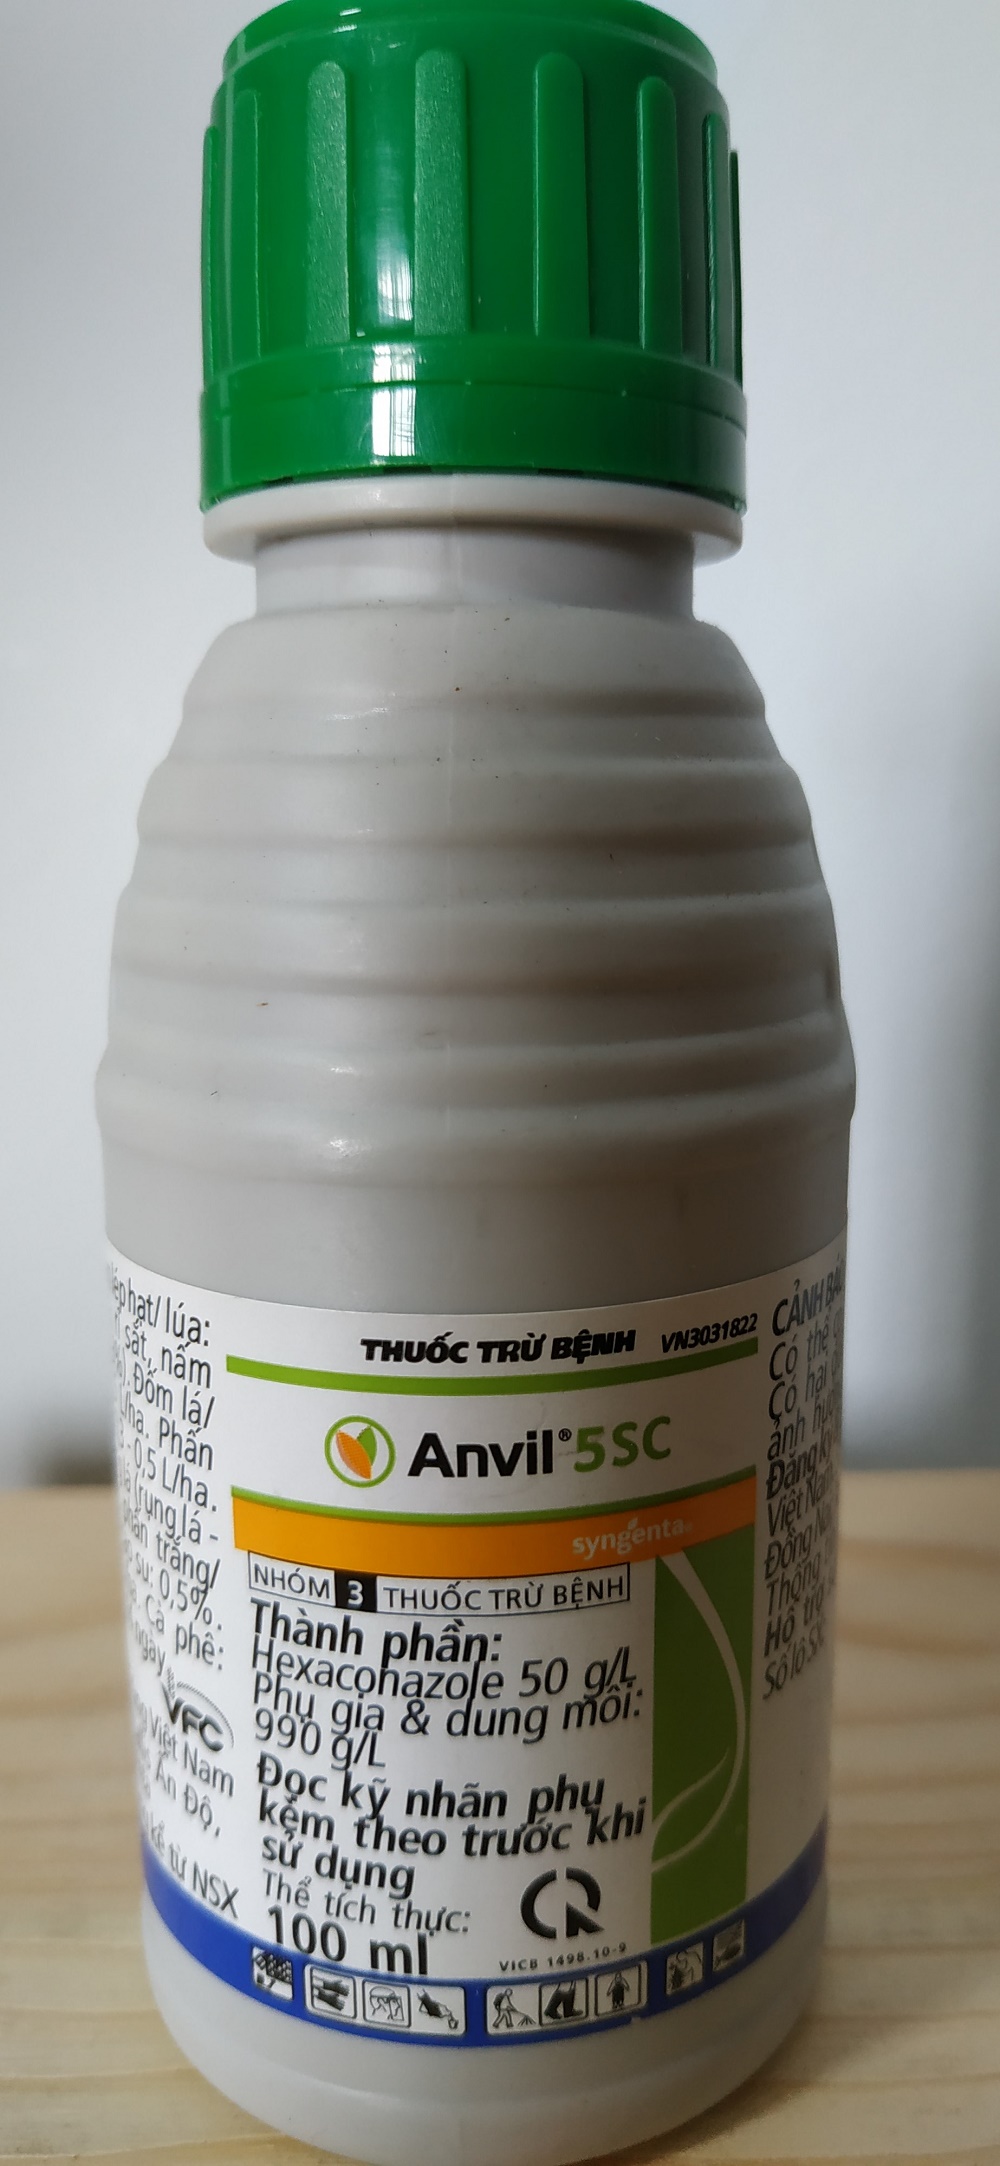 ANVIL 5SC Sản phẩm trừ bệnh cho hoa lan, cây kiểng, rau màu - chai 100 ml